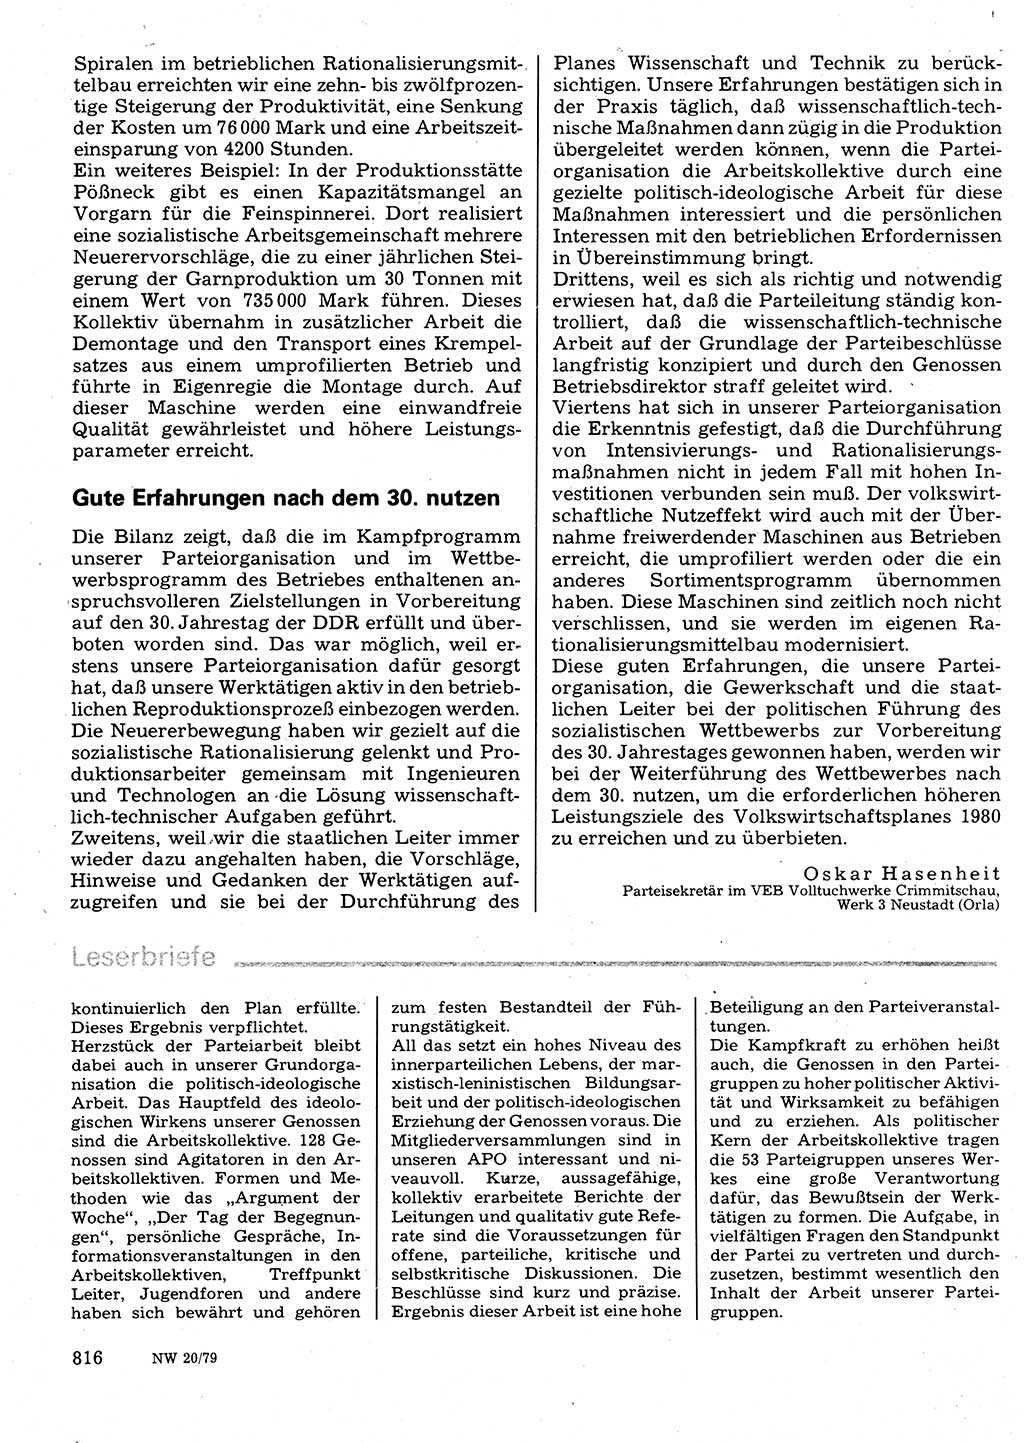 Neuer Weg (NW), Organ des Zentralkomitees (ZK) der SED (Sozialistische Einheitspartei Deutschlands) für Fragen des Parteilebens, 34. Jahrgang [Deutsche Demokratische Republik (DDR)] 1979, Seite 816 (NW ZK SED DDR 1979, S. 816)